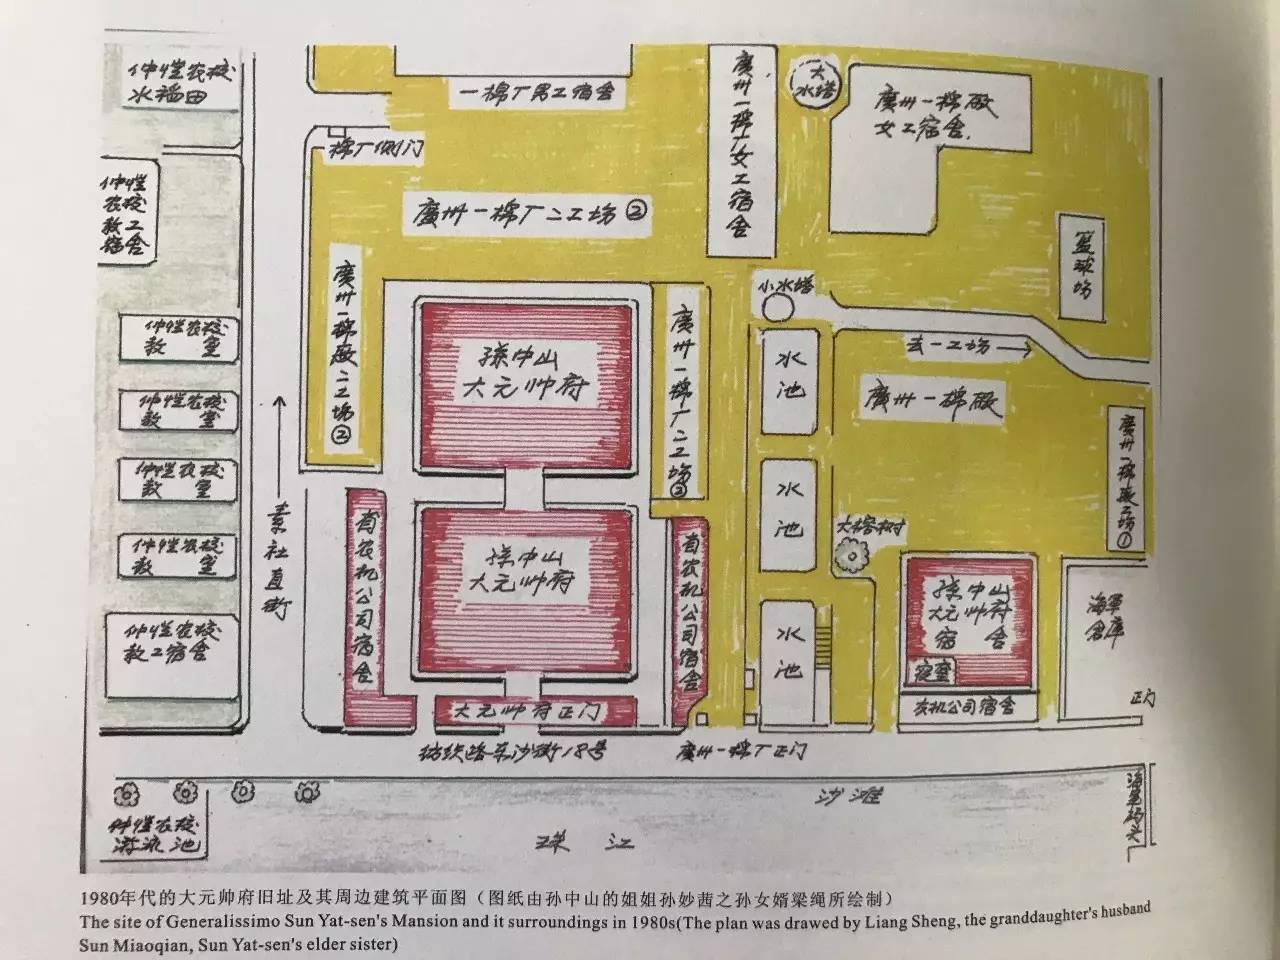 大元帅府如何到达如何玩地址:广州市海珠区纺织路东沙街18号如何前往